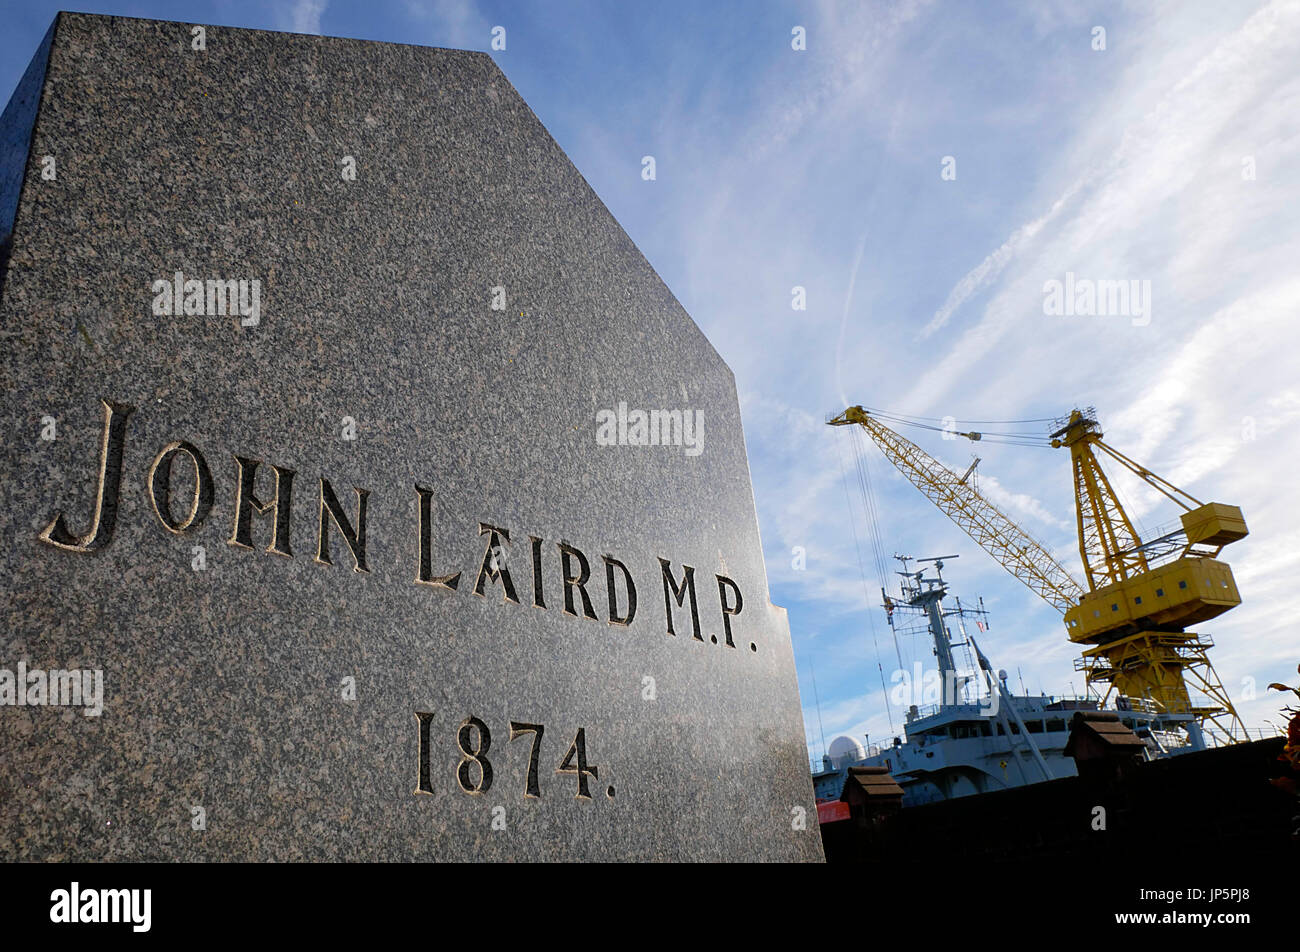 Pierre tombale du grand constructeur naval britannique John Laird de Birkenhead, député de l'héritage qui est le chantier naval Cammell Laird à Birkenhead, Merseyside. Banque D'Images